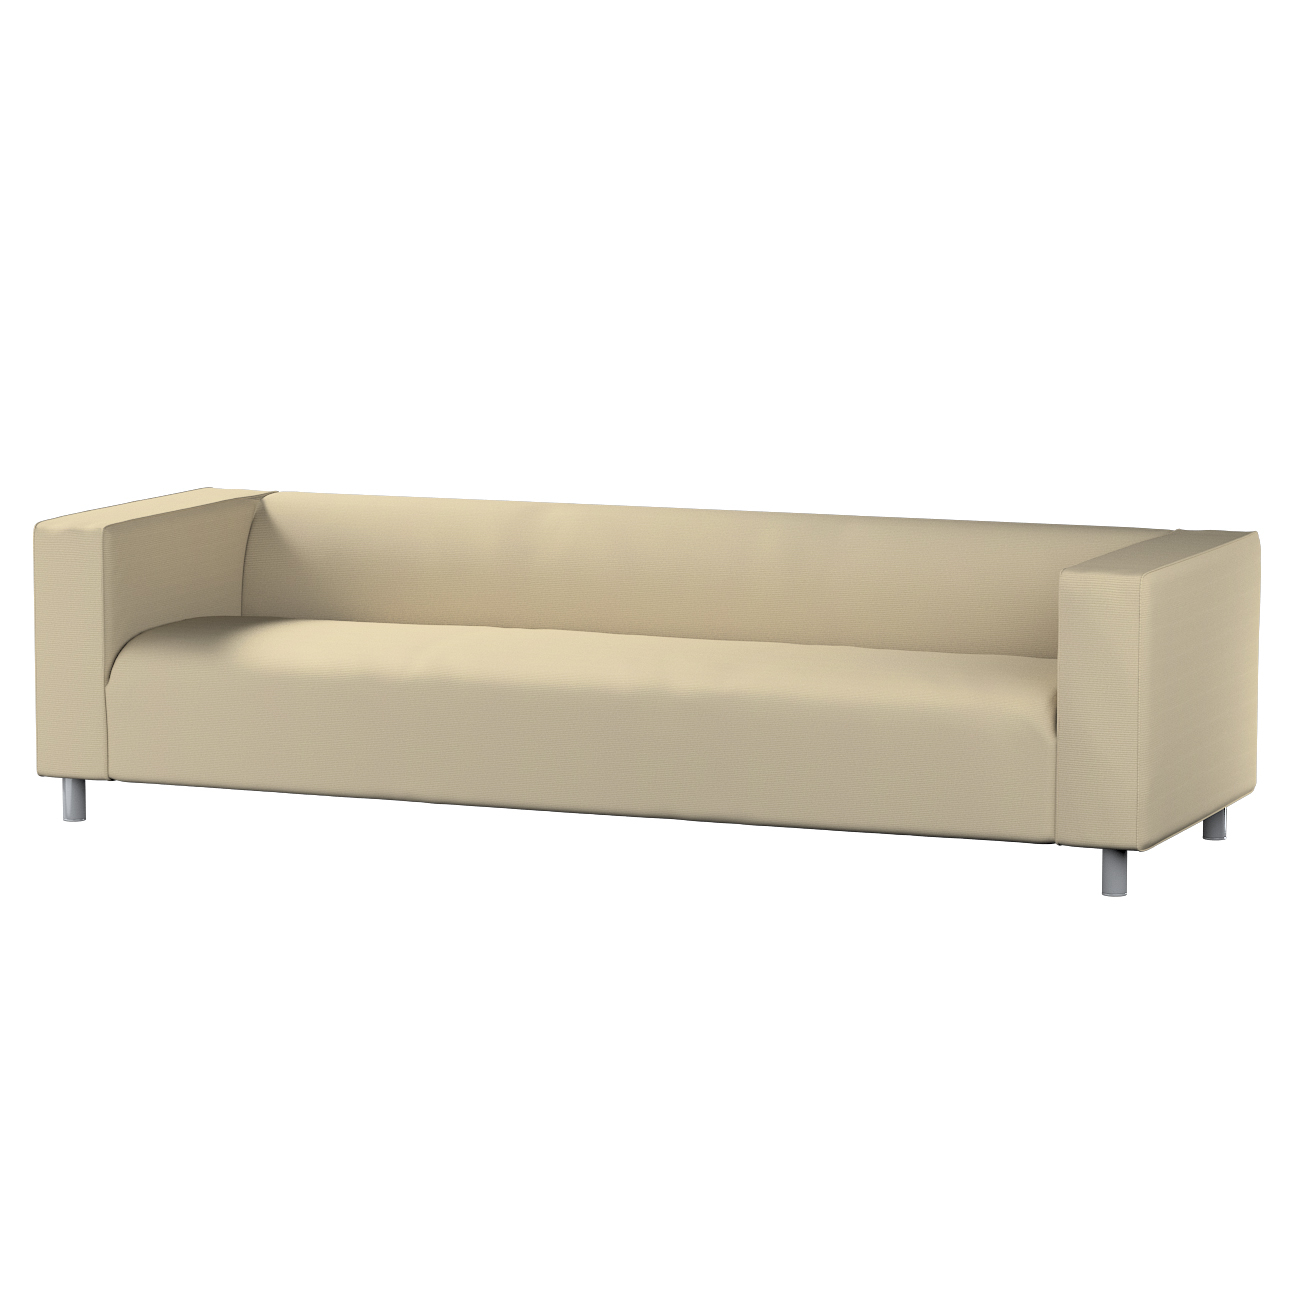 Bezug für Klippan 4-Sitzer Sofa, beige, Bezug für Klippan 4-Sitzer, Manches günstig online kaufen